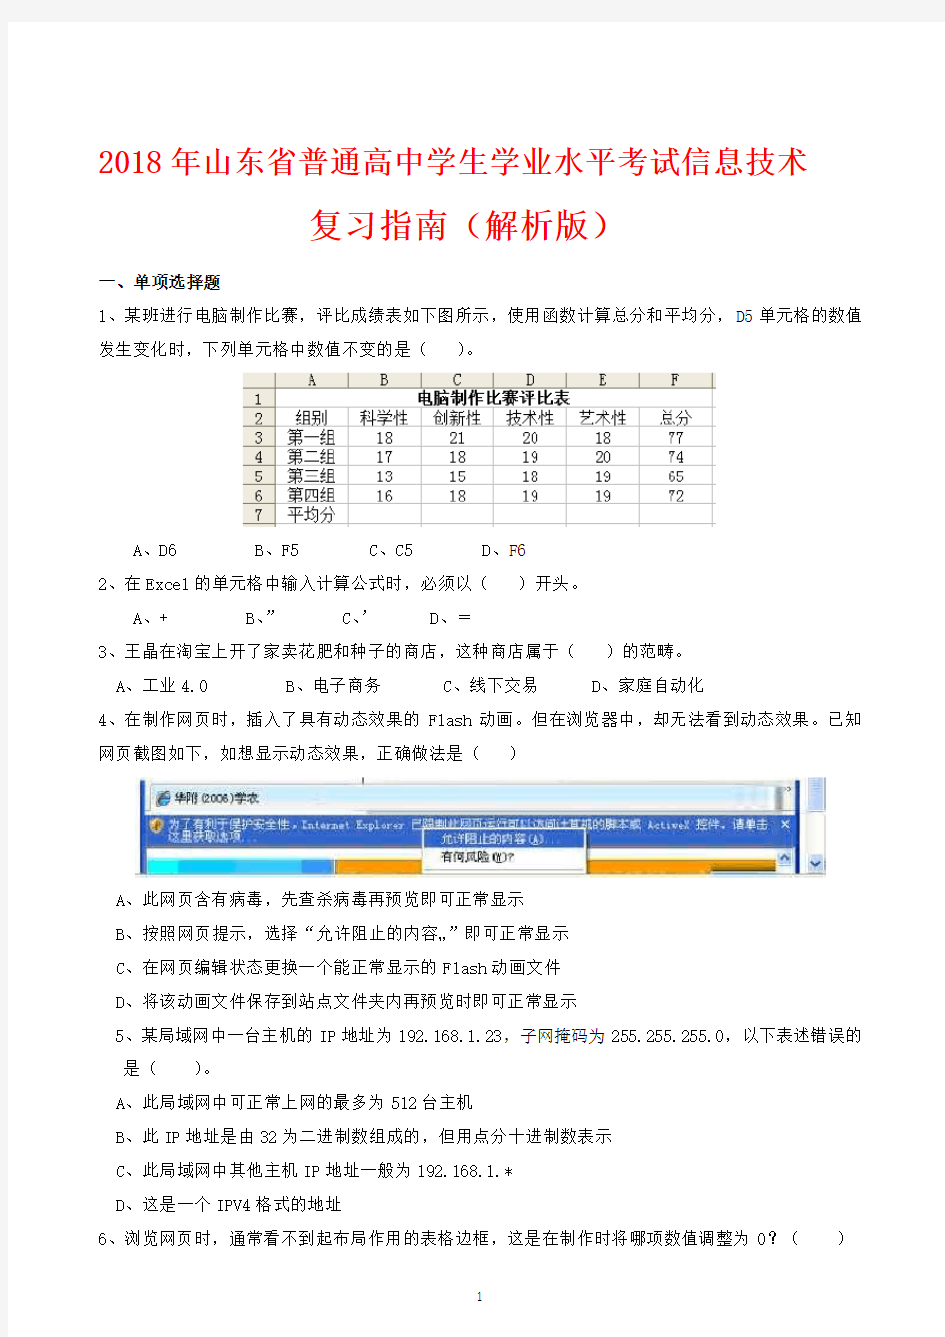 2018年山东省普通高中学生学业水平考试信息技术复习指南(解析版)